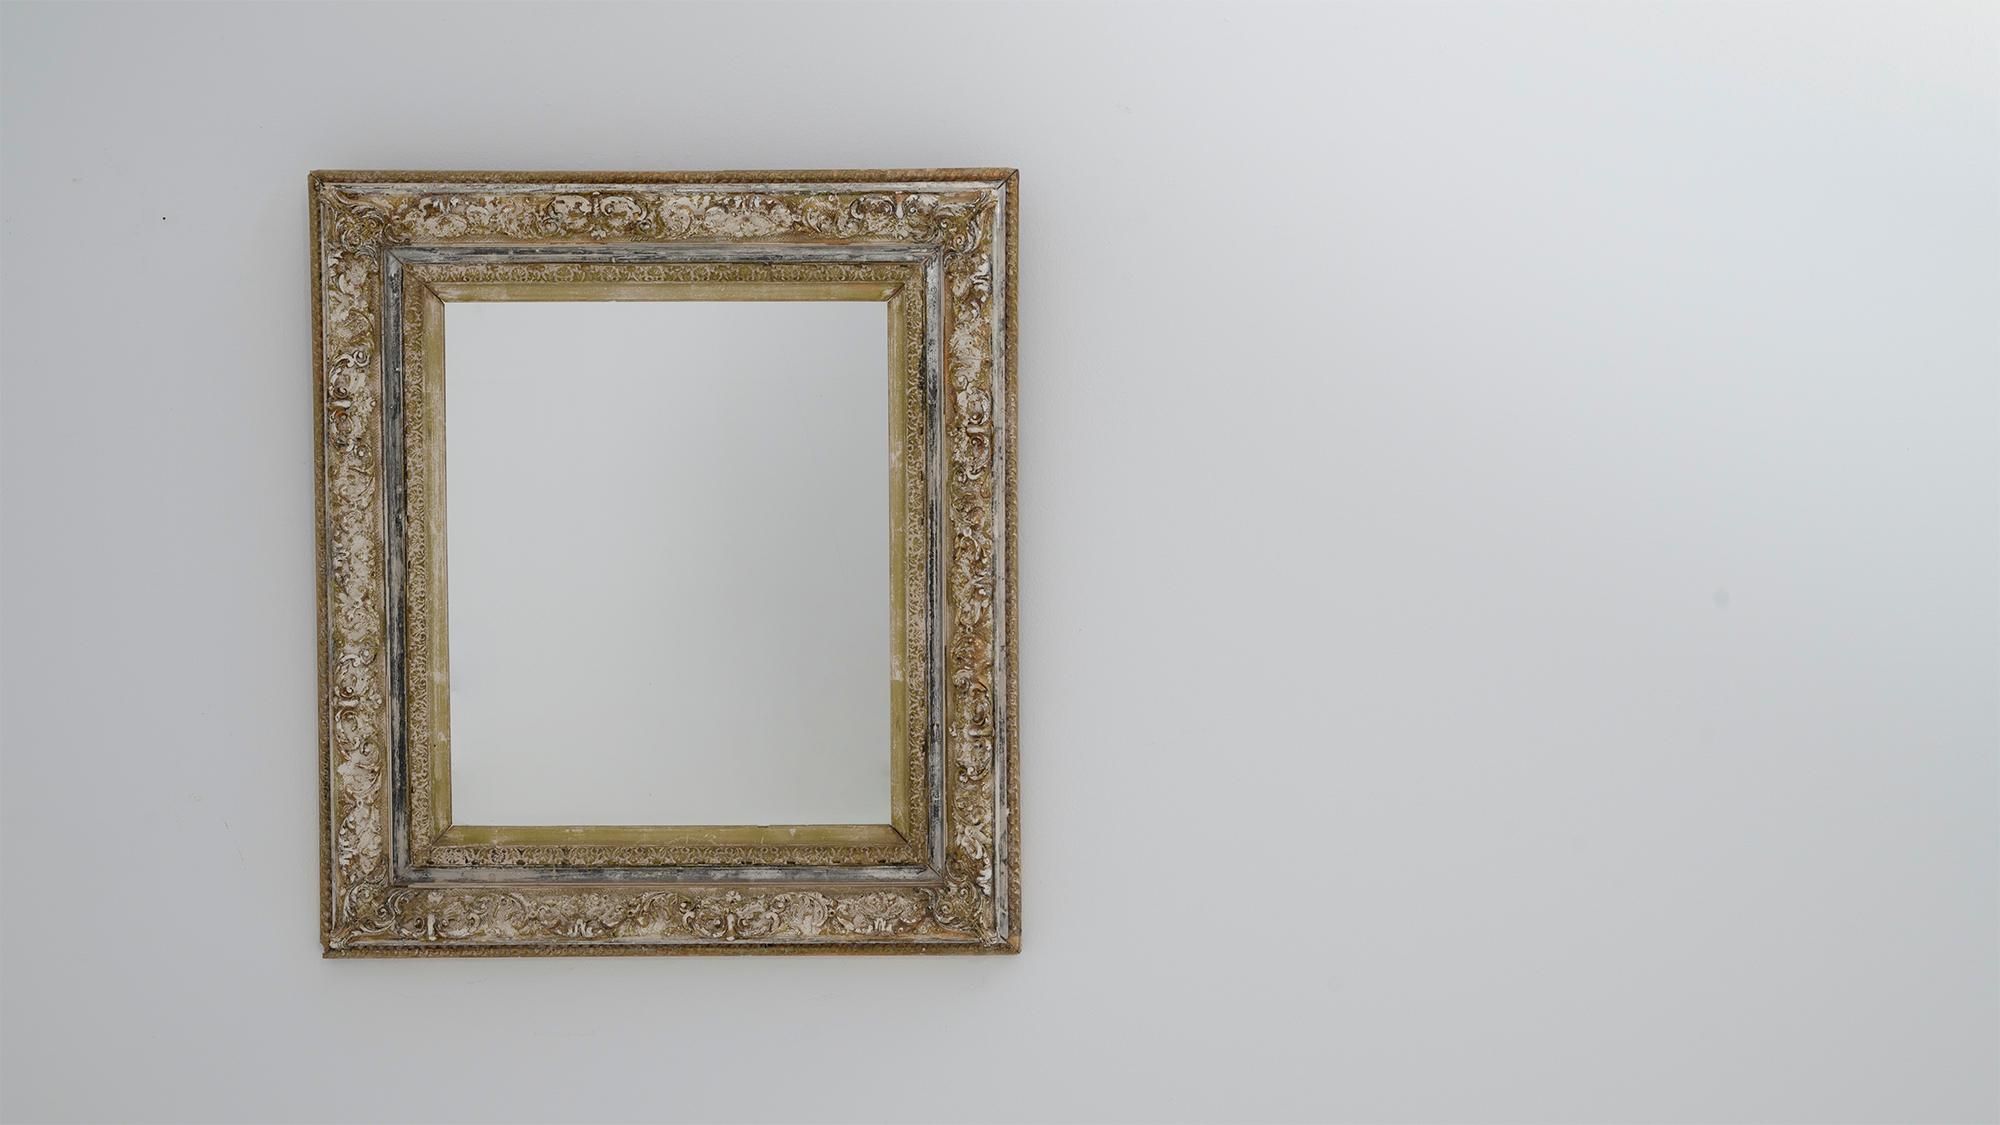 Dieser französische Spiegel aus dem 19. Jahrhundert hat einen beeindruckenden Holzrahmen mit einer tiefen Patina und bietet eine schöne Mischung aus rustikalem Charme und antiker Raffinesse. Die detaillierten Schnitzereien auf dem Rahmen werden